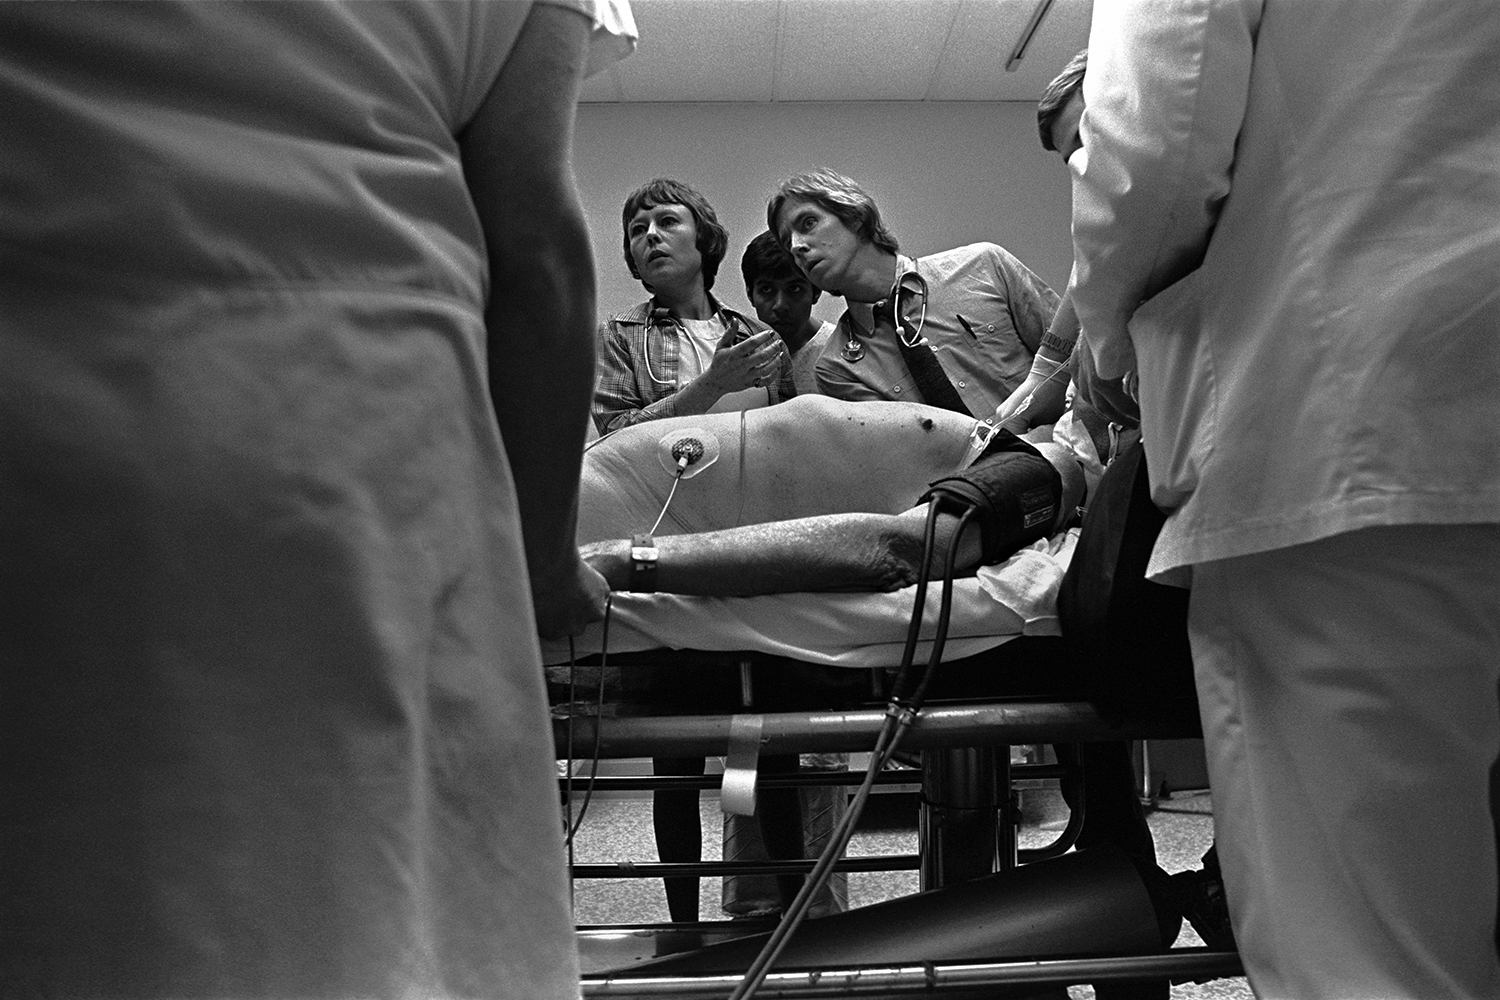   Monitoring life signs  Denver General Hospital Denver, CO. &nbsp;1981 